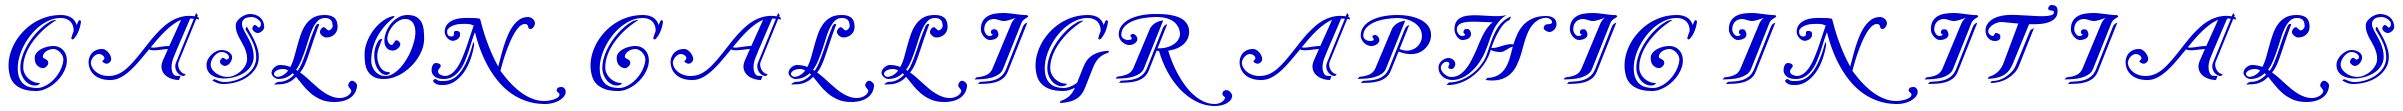 Caslon Calligraphic Initials लिपि